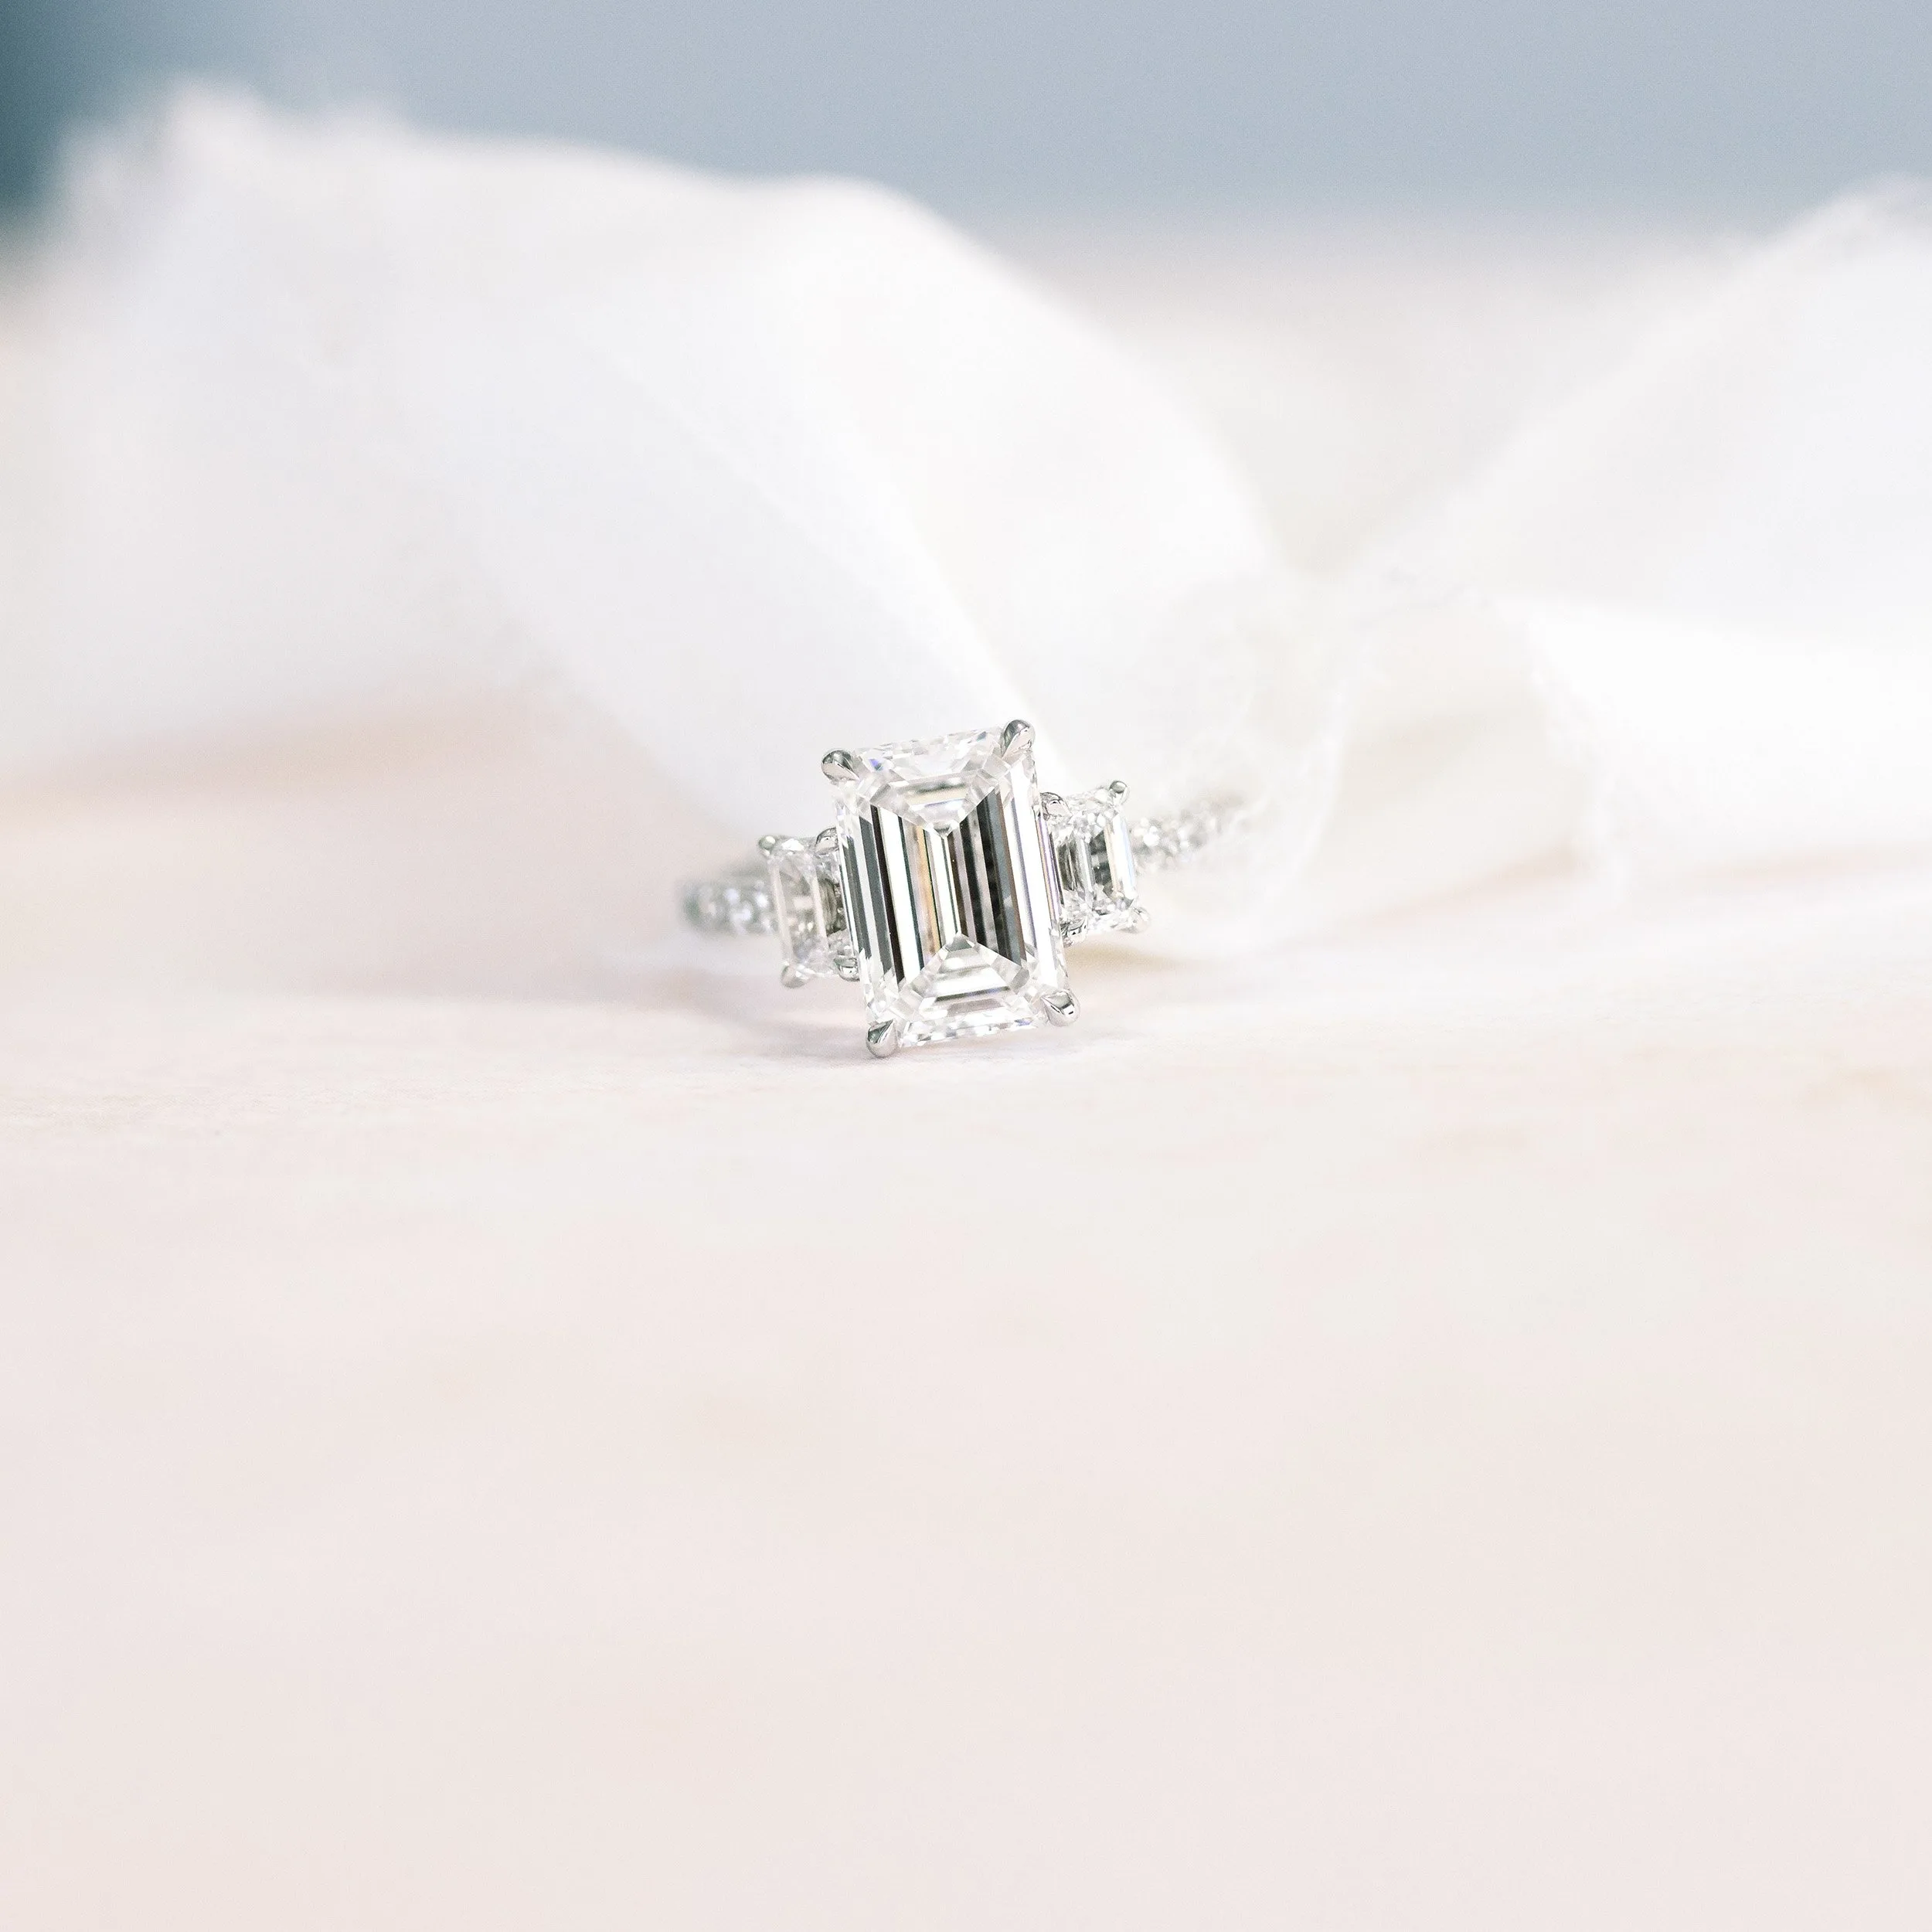 2.5 ct emerald cut three stone lab diamond engagement ring platinum ada diamonds design ad 468